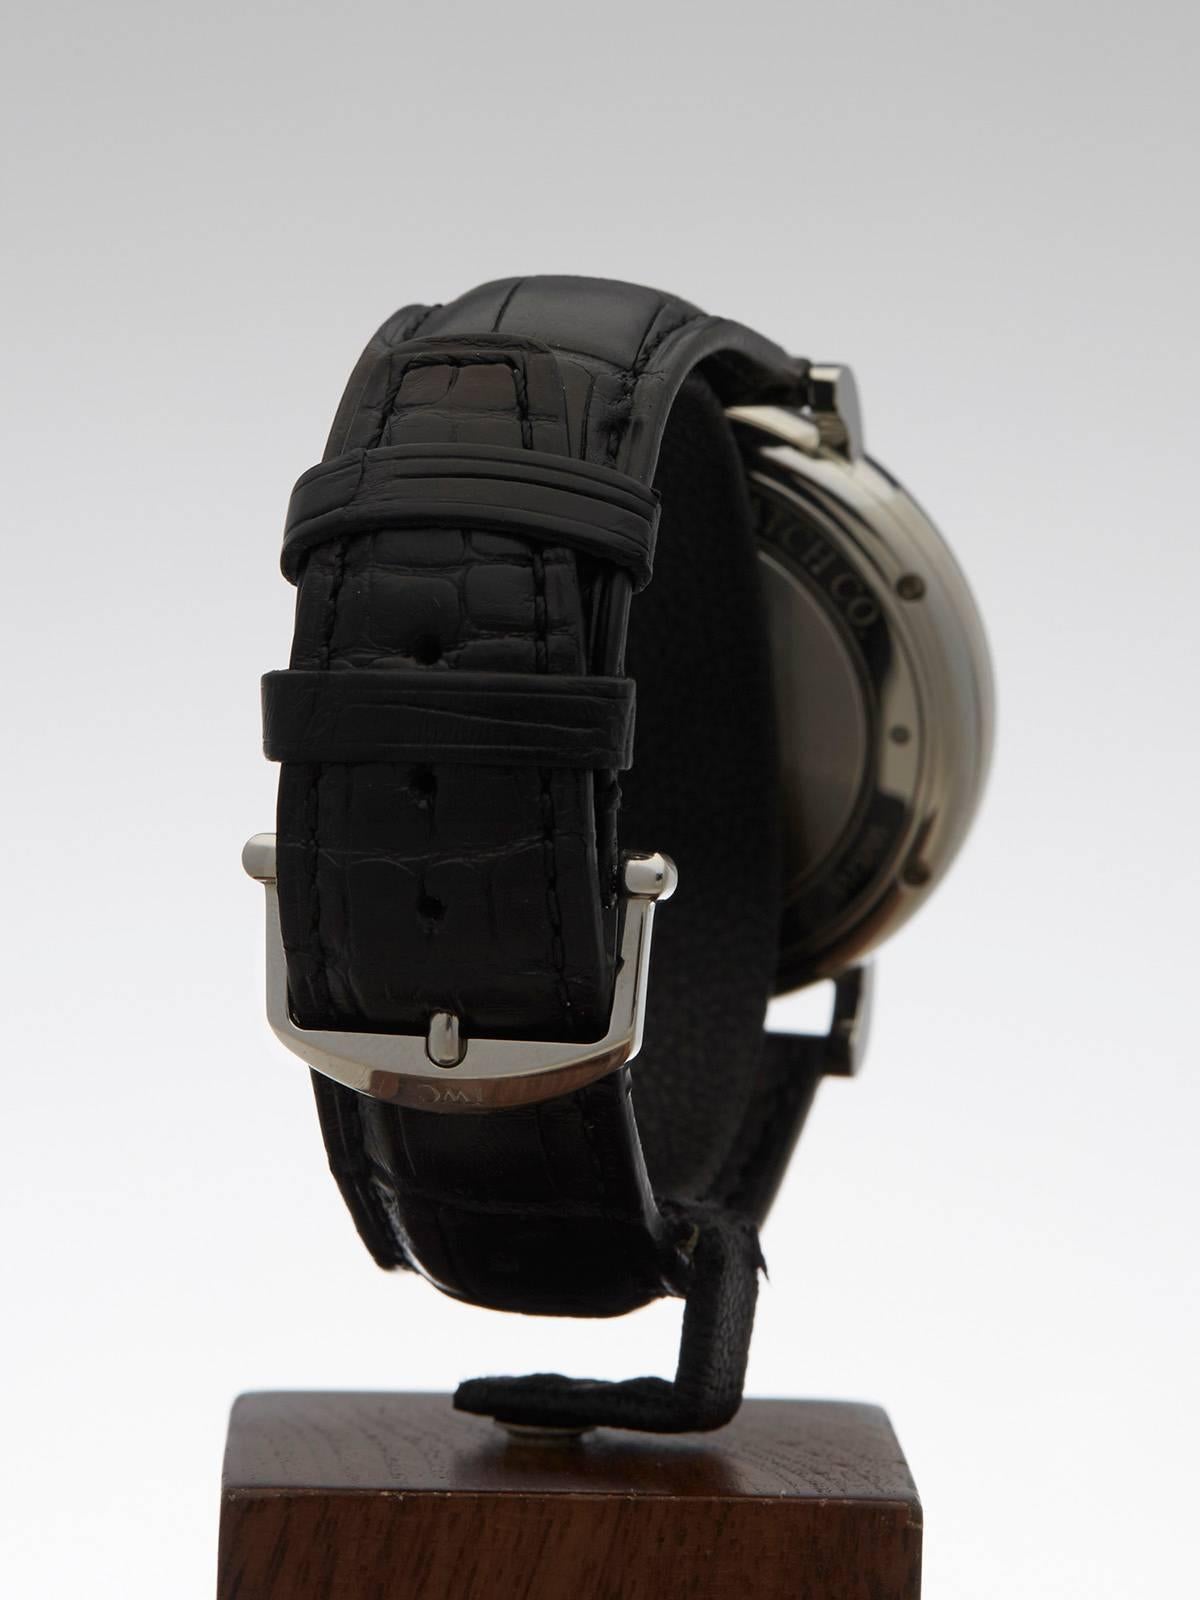  IWC Stainless Steel Portofino Automatic Wristwatch Ref IW356507 2014 4